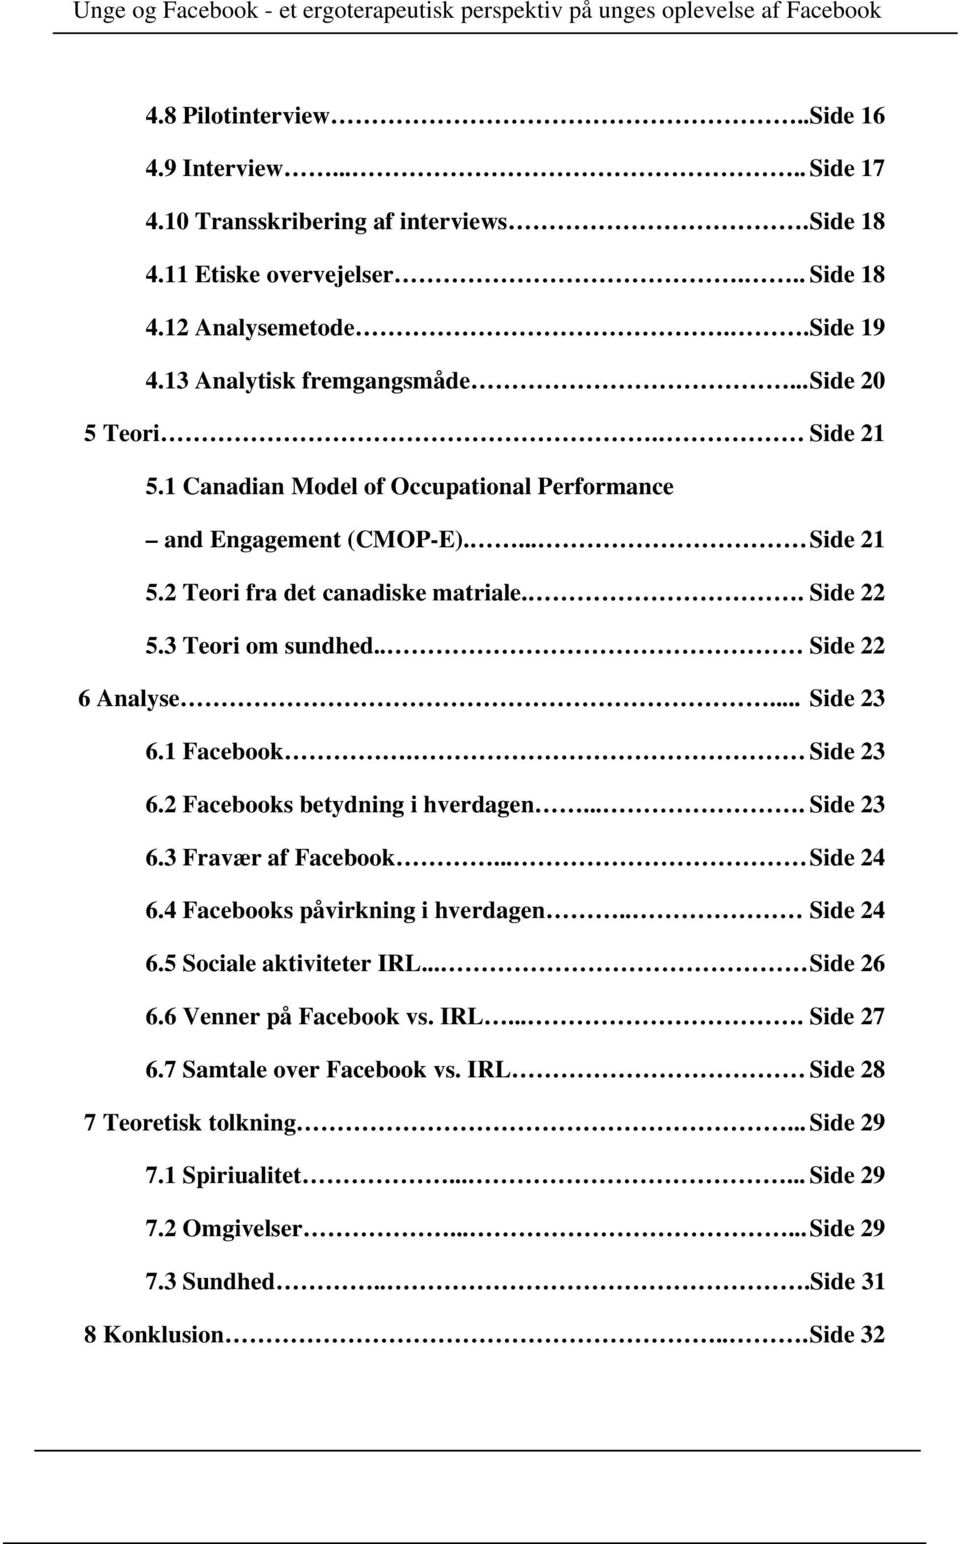 .. Side 23 6.1 Facebook. Side 23 6.2 Facebooks betydning i hverdagen.... Side 23 6.3 Fravær af Facebook... Side 24 6.4 Facebooks påvirkning i hverdagen.. Side 24 6.5 Sociale aktiviteter IRL.